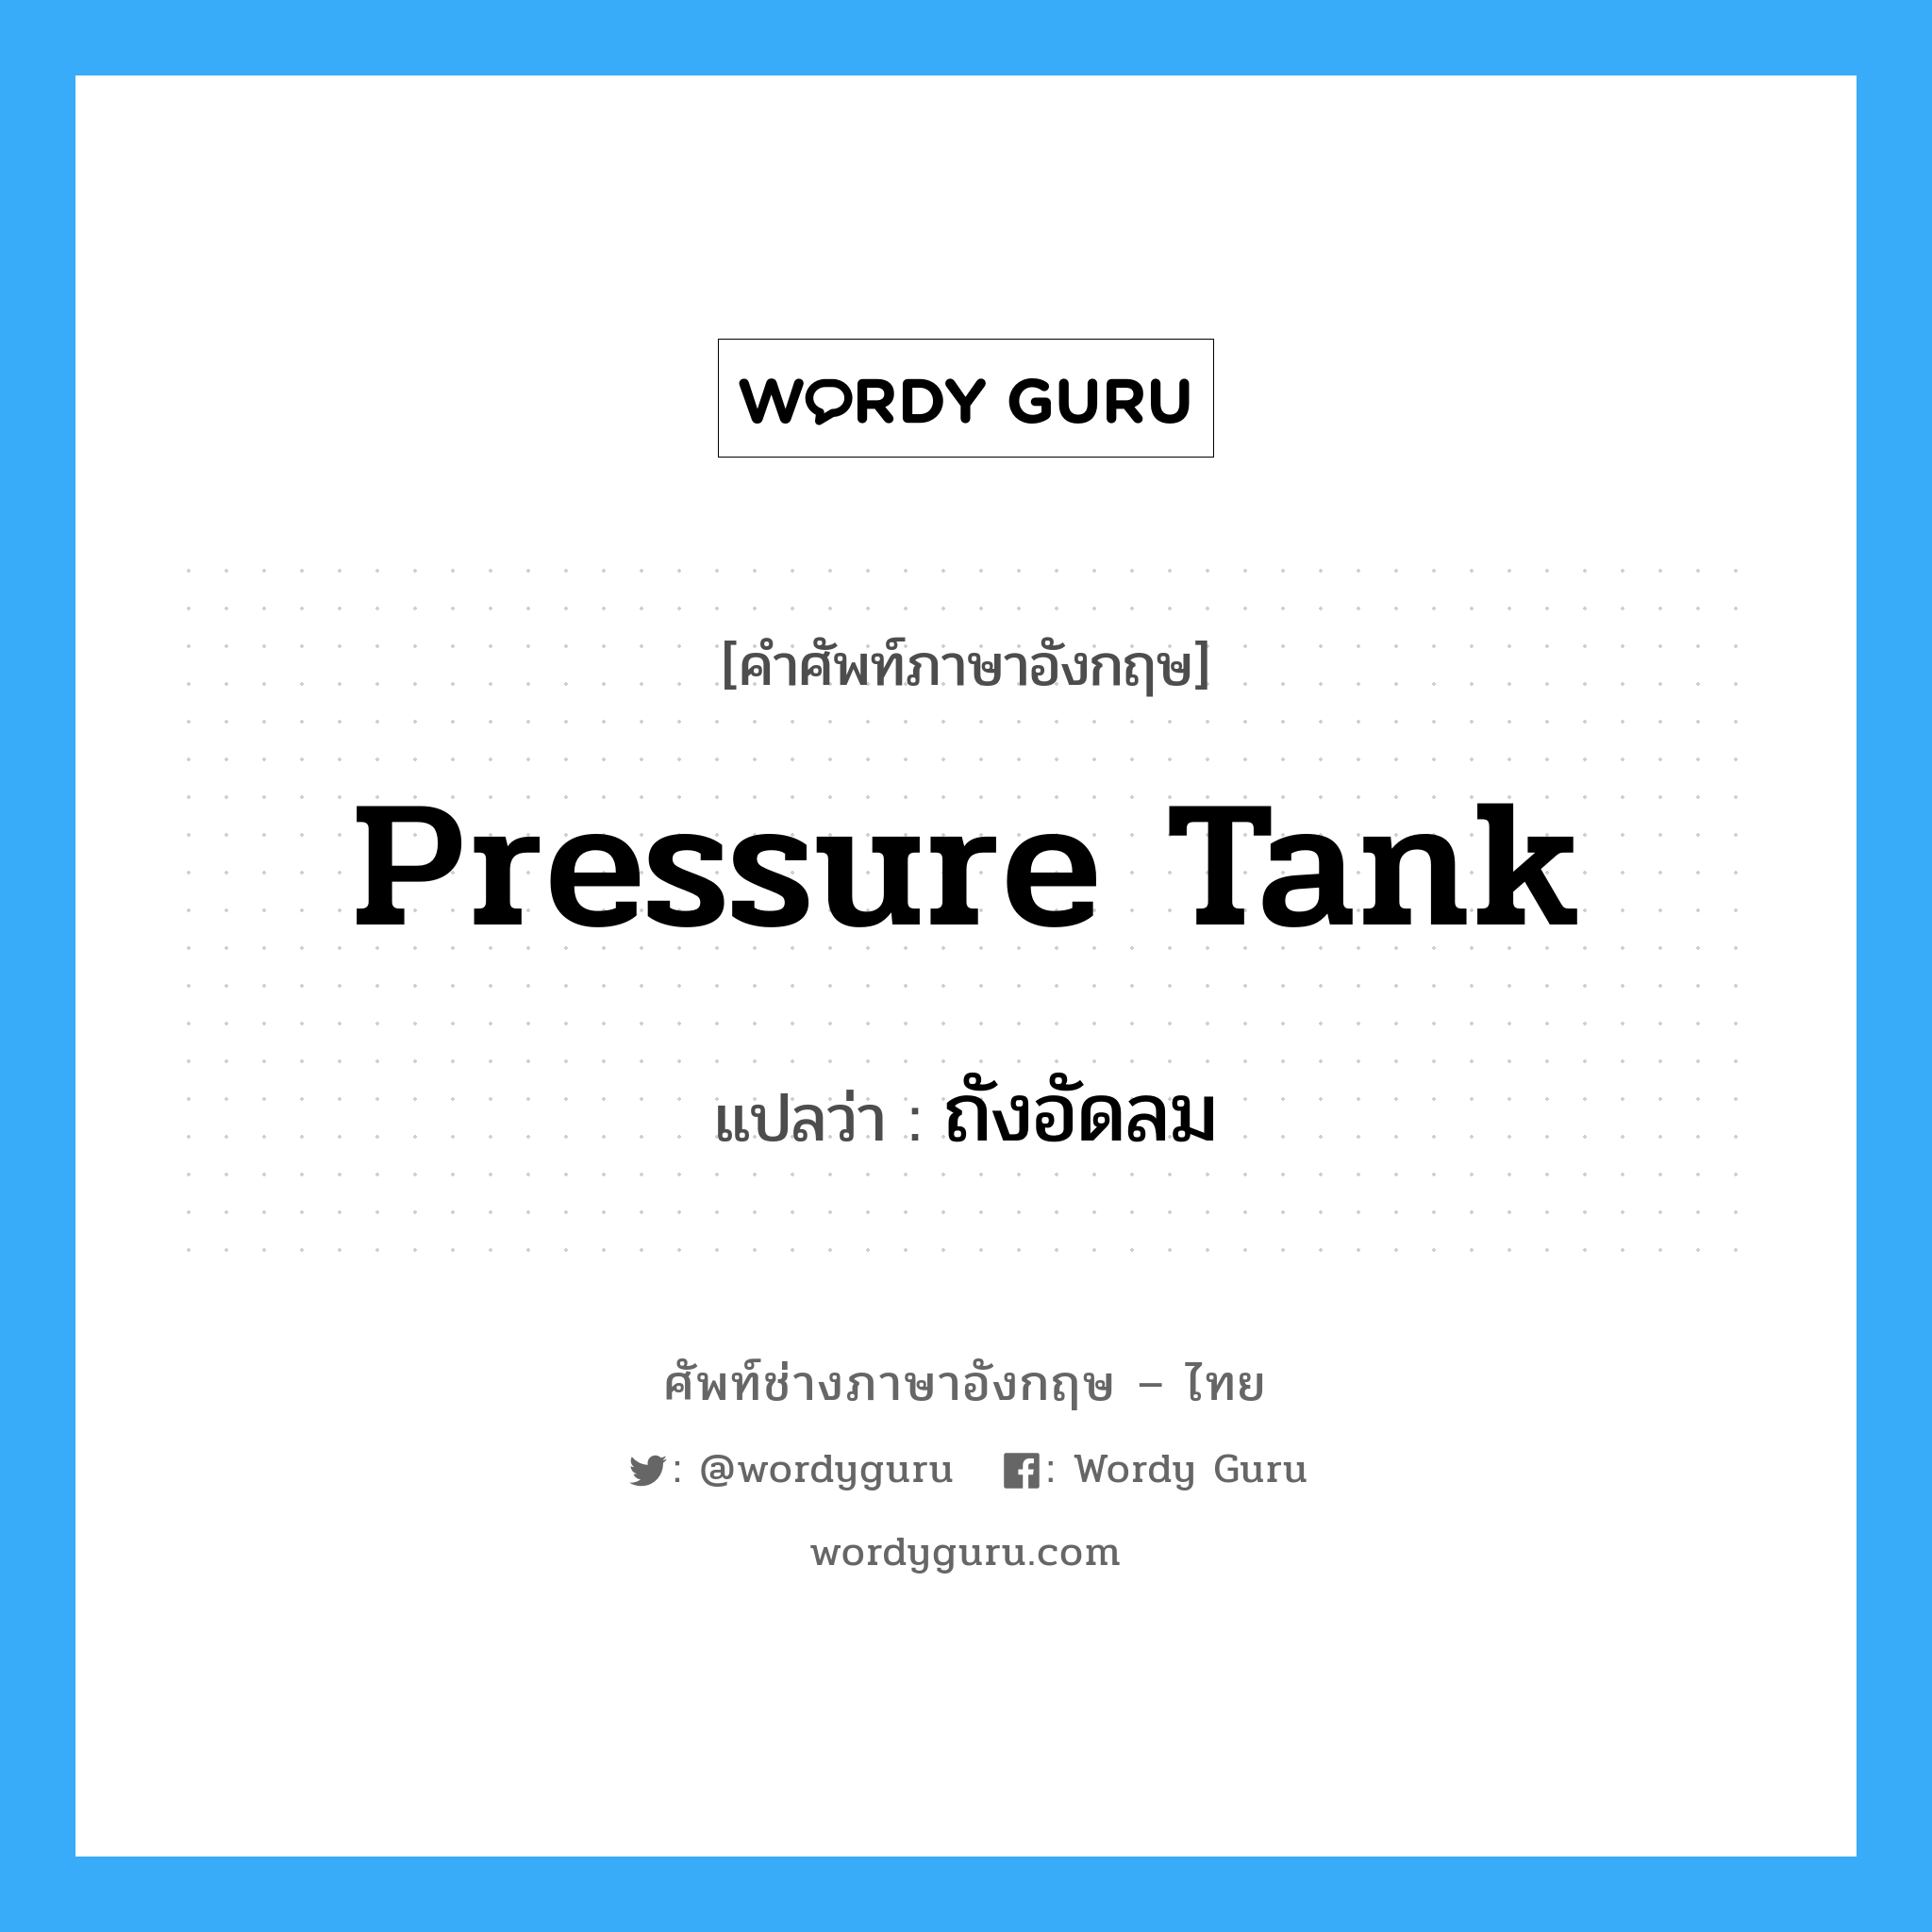 pressure tank แปลว่า?, คำศัพท์ช่างภาษาอังกฤษ - ไทย pressure tank คำศัพท์ภาษาอังกฤษ pressure tank แปลว่า ถังอัดลม